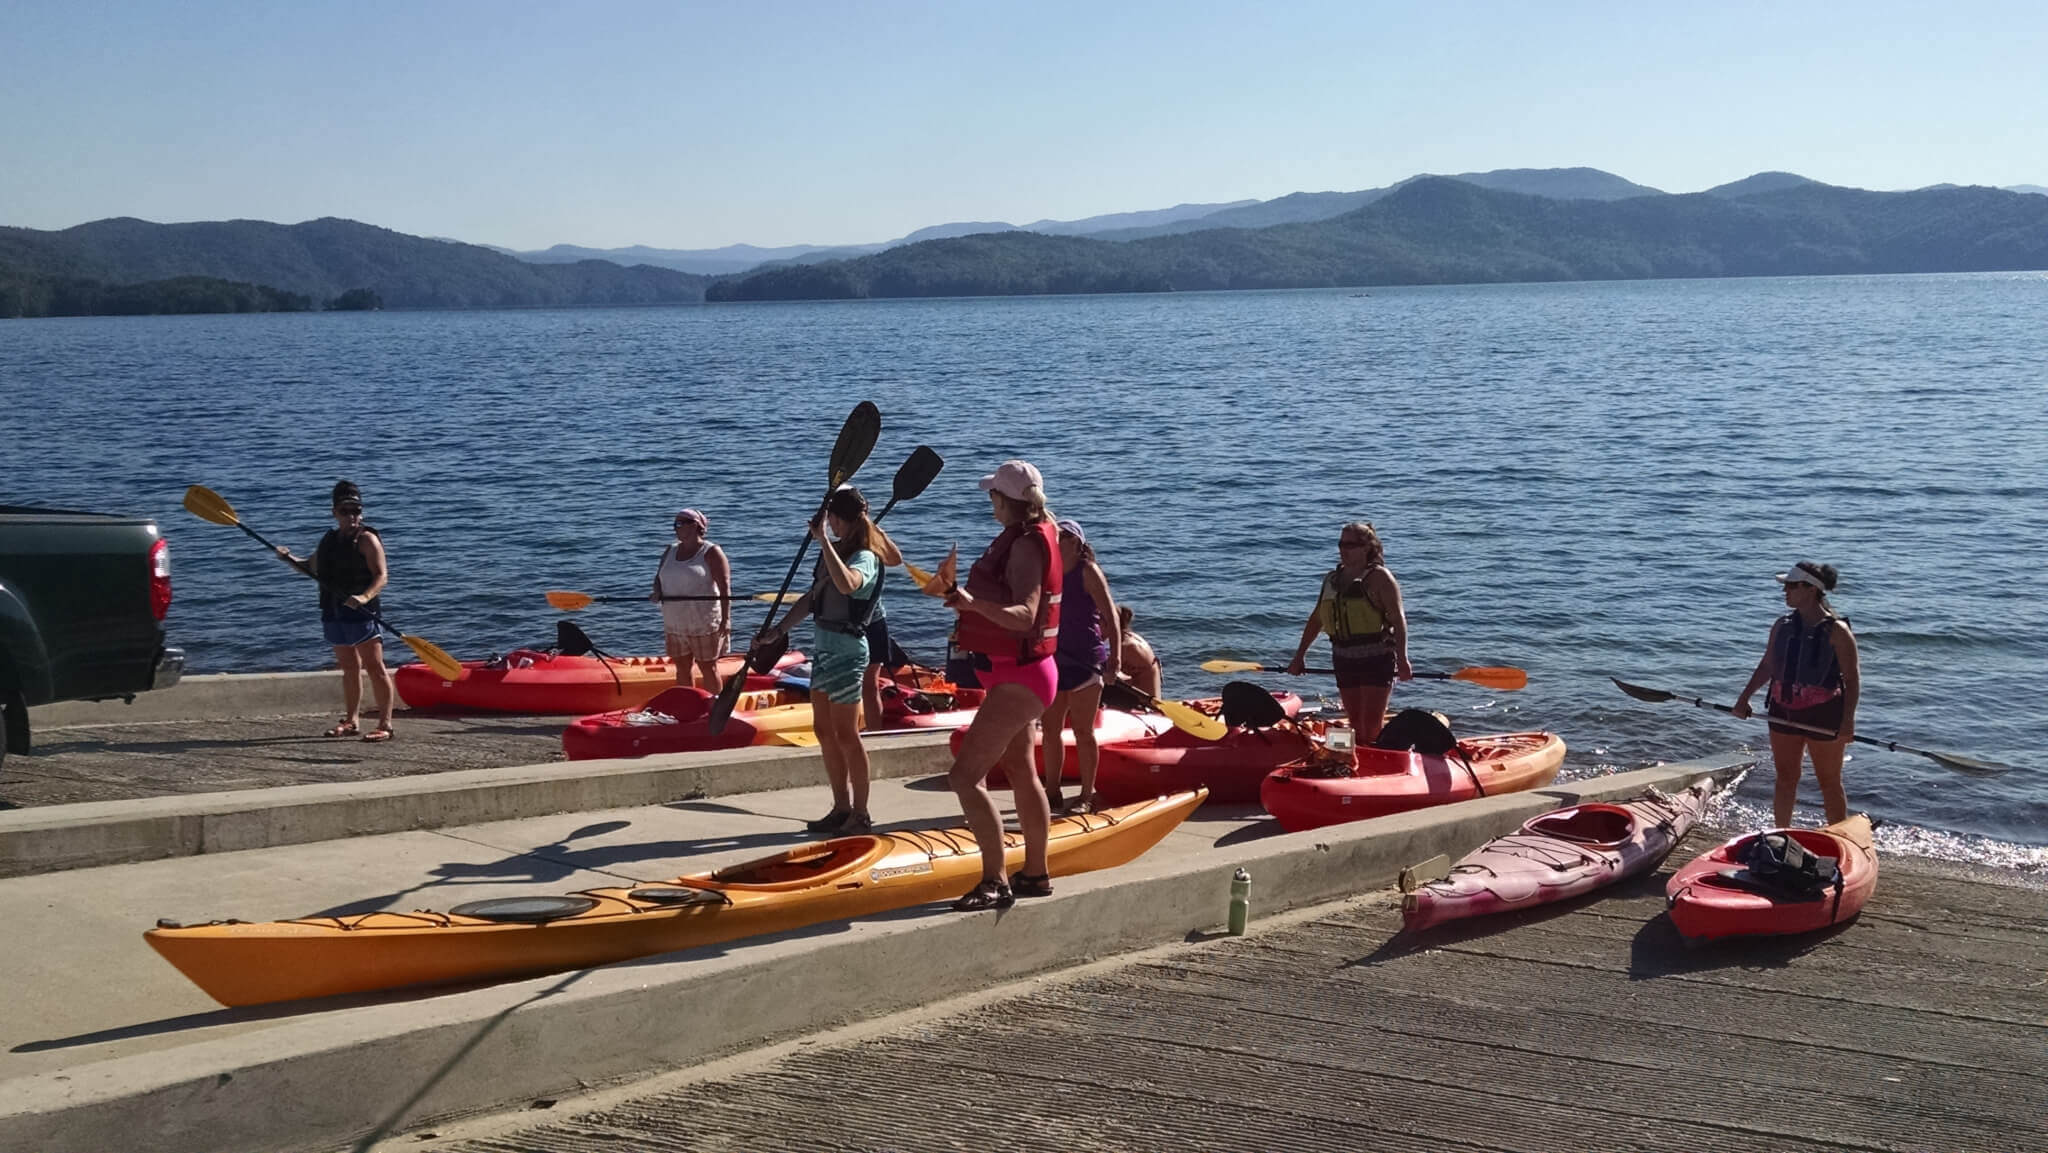 Kayaking Boat Ramp, Lake Jocassee, Waterfalls, canoes, Kayaks, Stand-up paddleboards, Eclectic Sun, Salem, SC